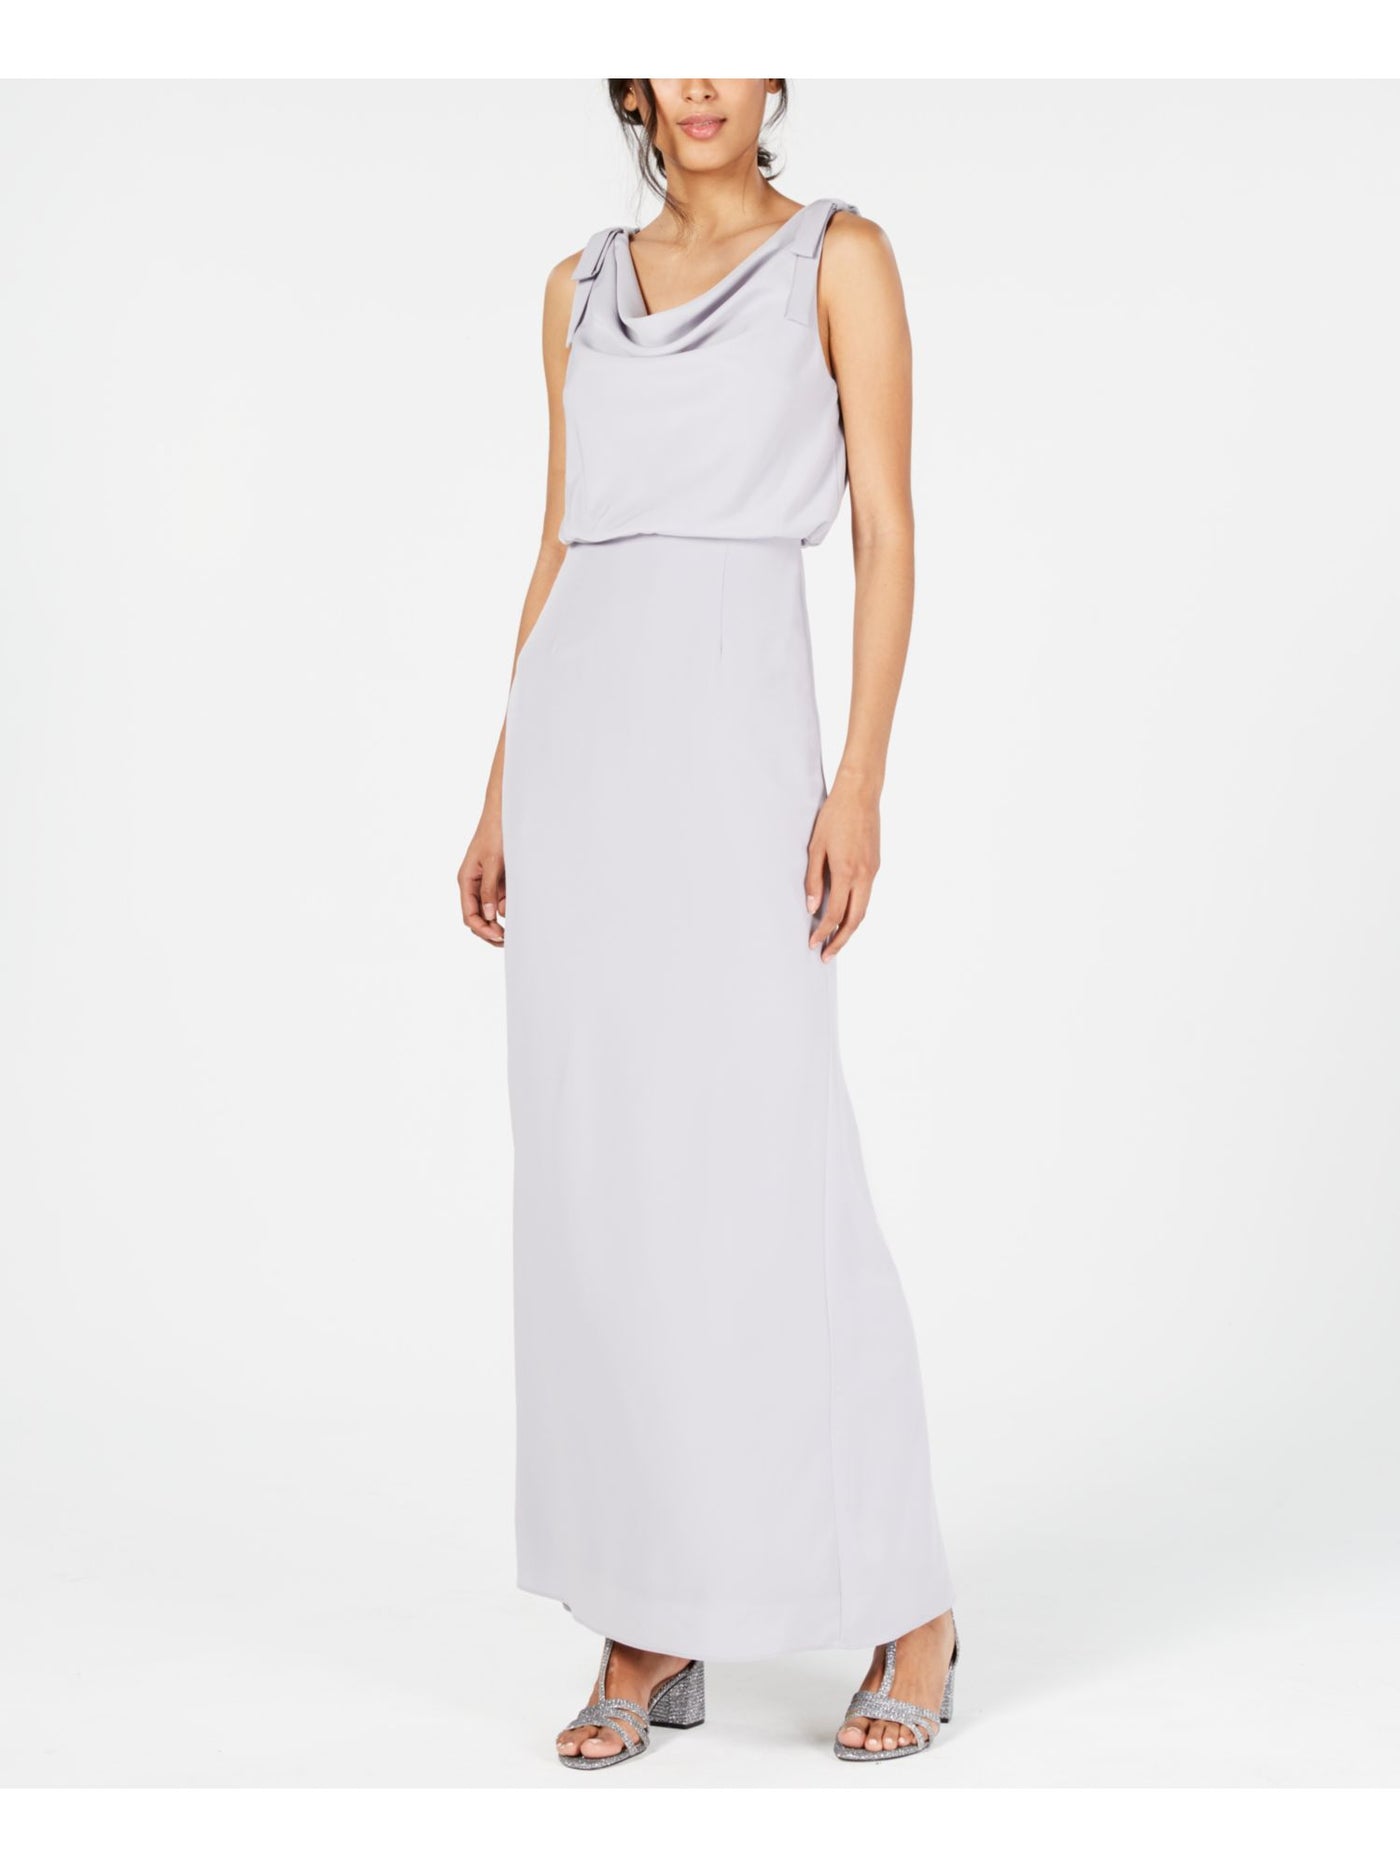 ADRIANNA PAPELL Womens Gray Slitted Sleeveless V Neck Full-Length Formal Blouson Dress 14